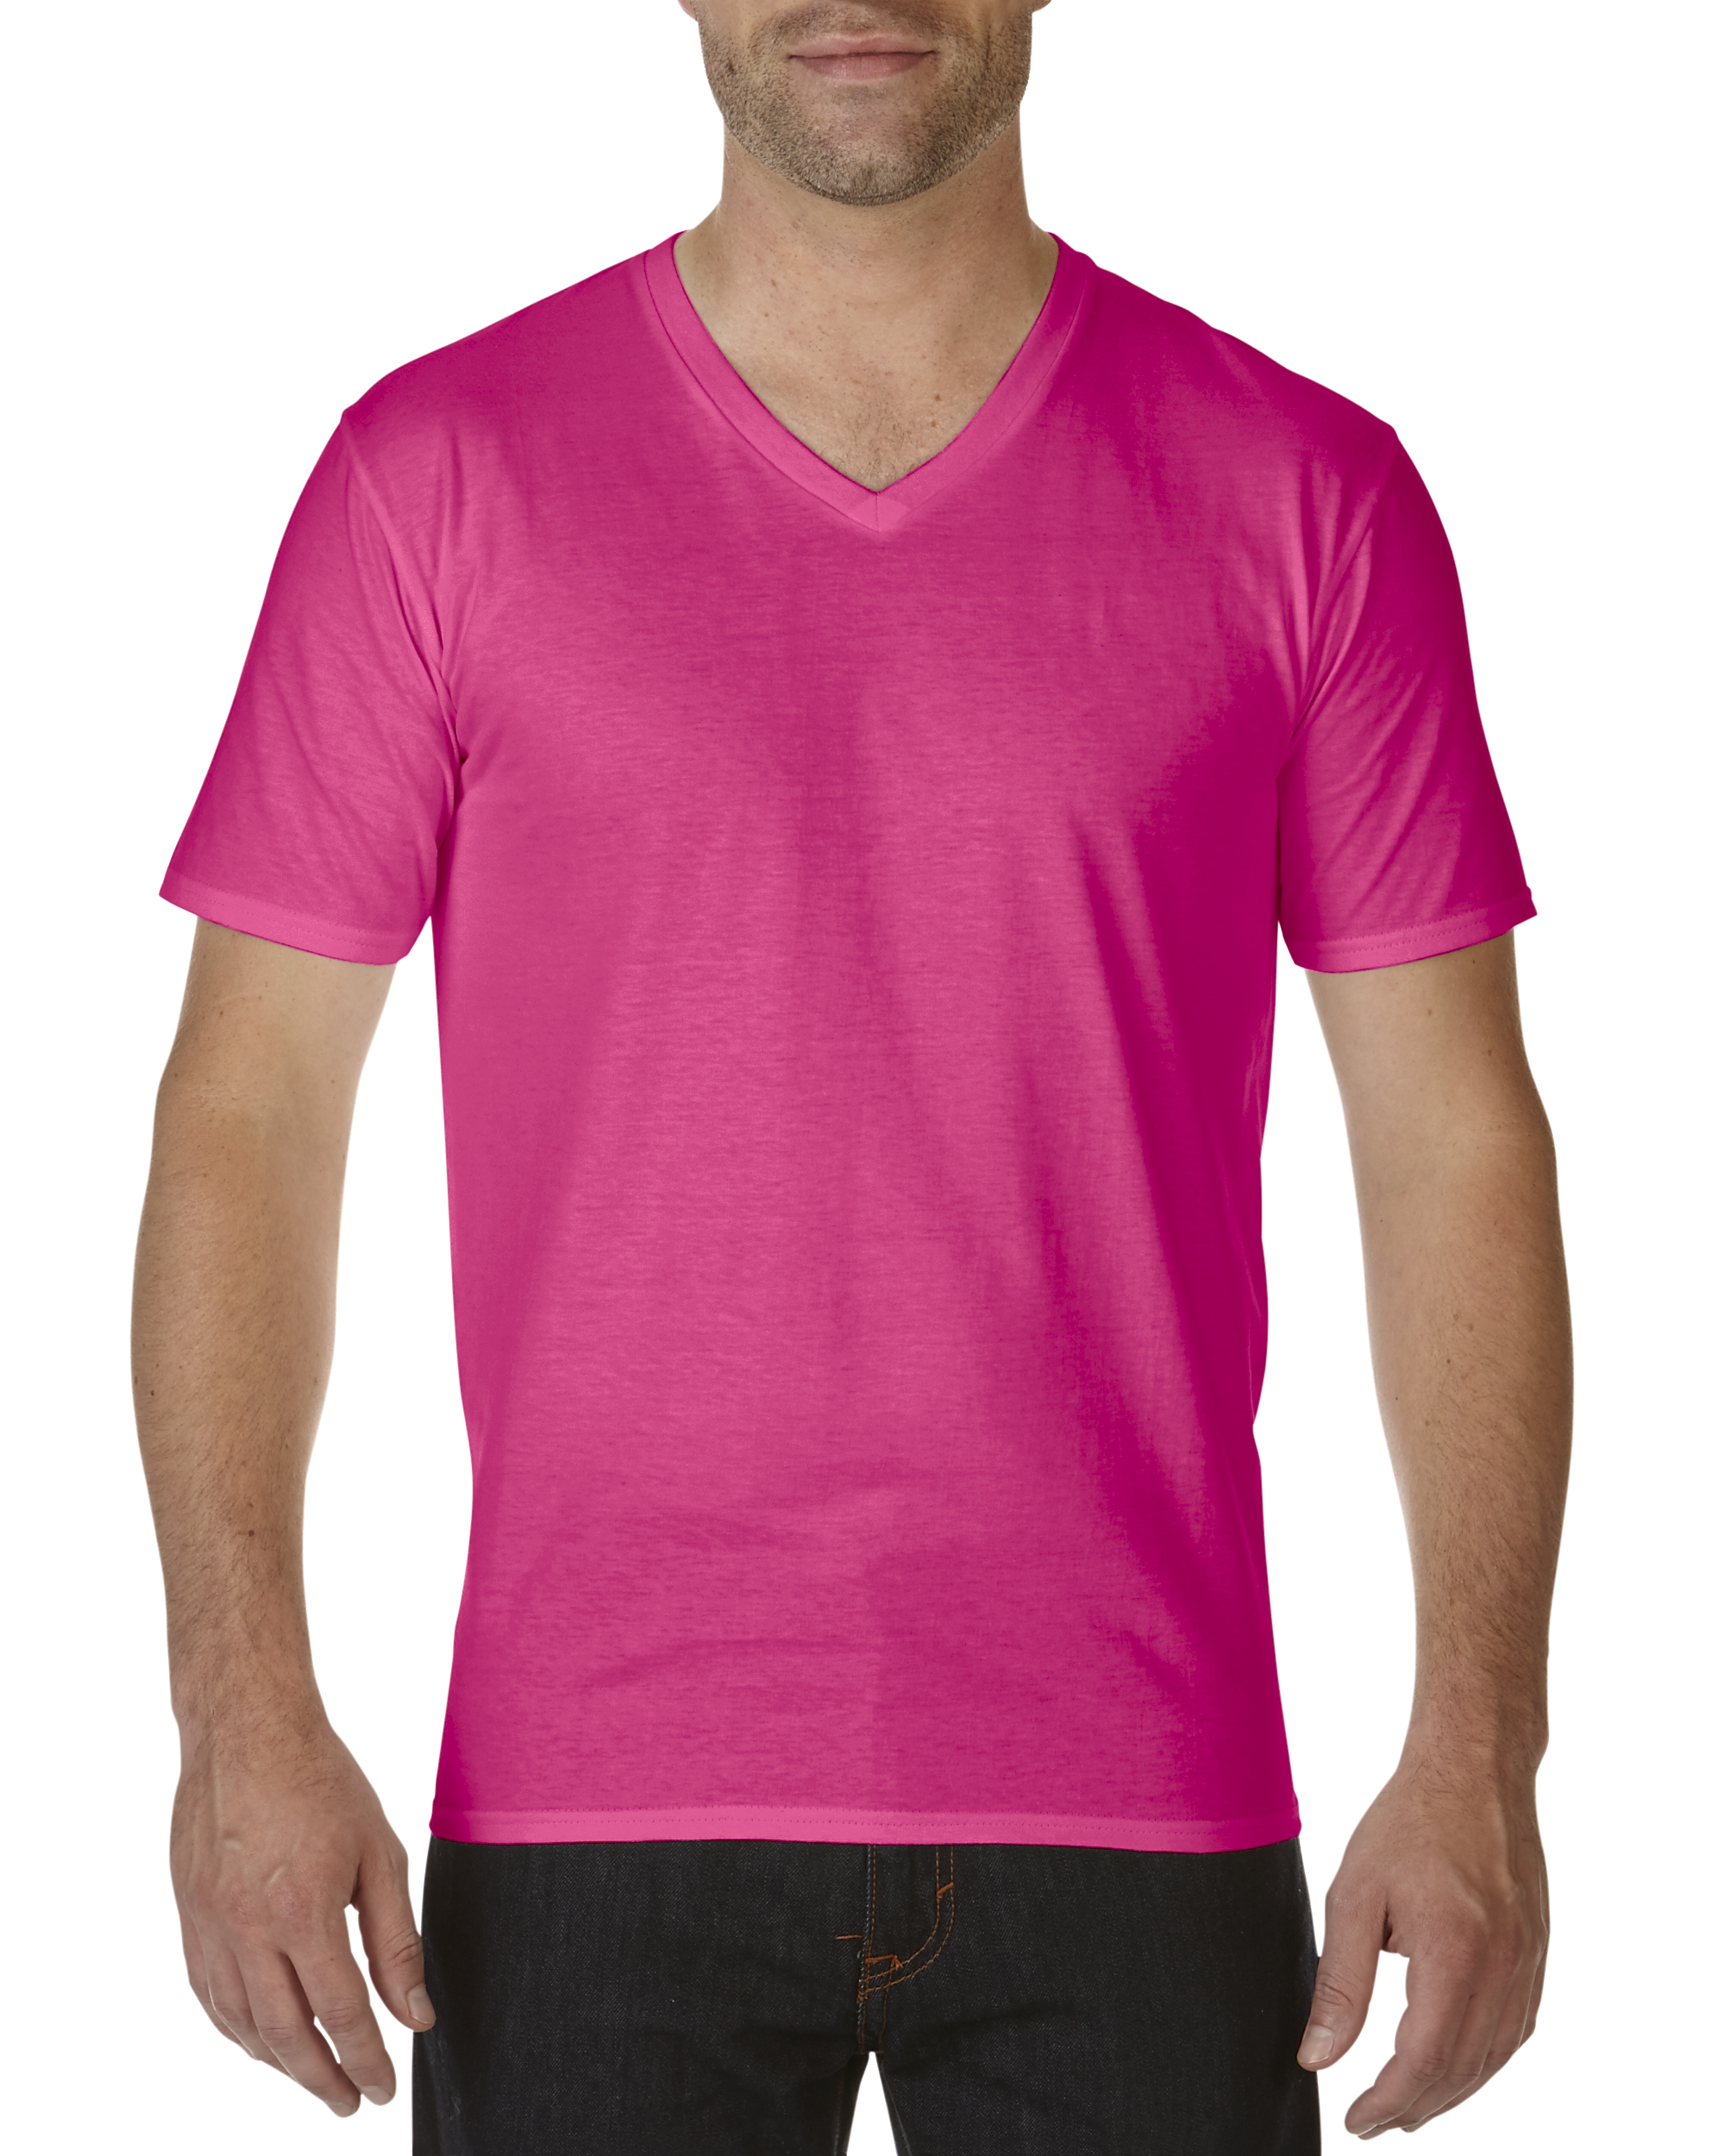 T-shirt V-Neck Premium Cotton GILDAN